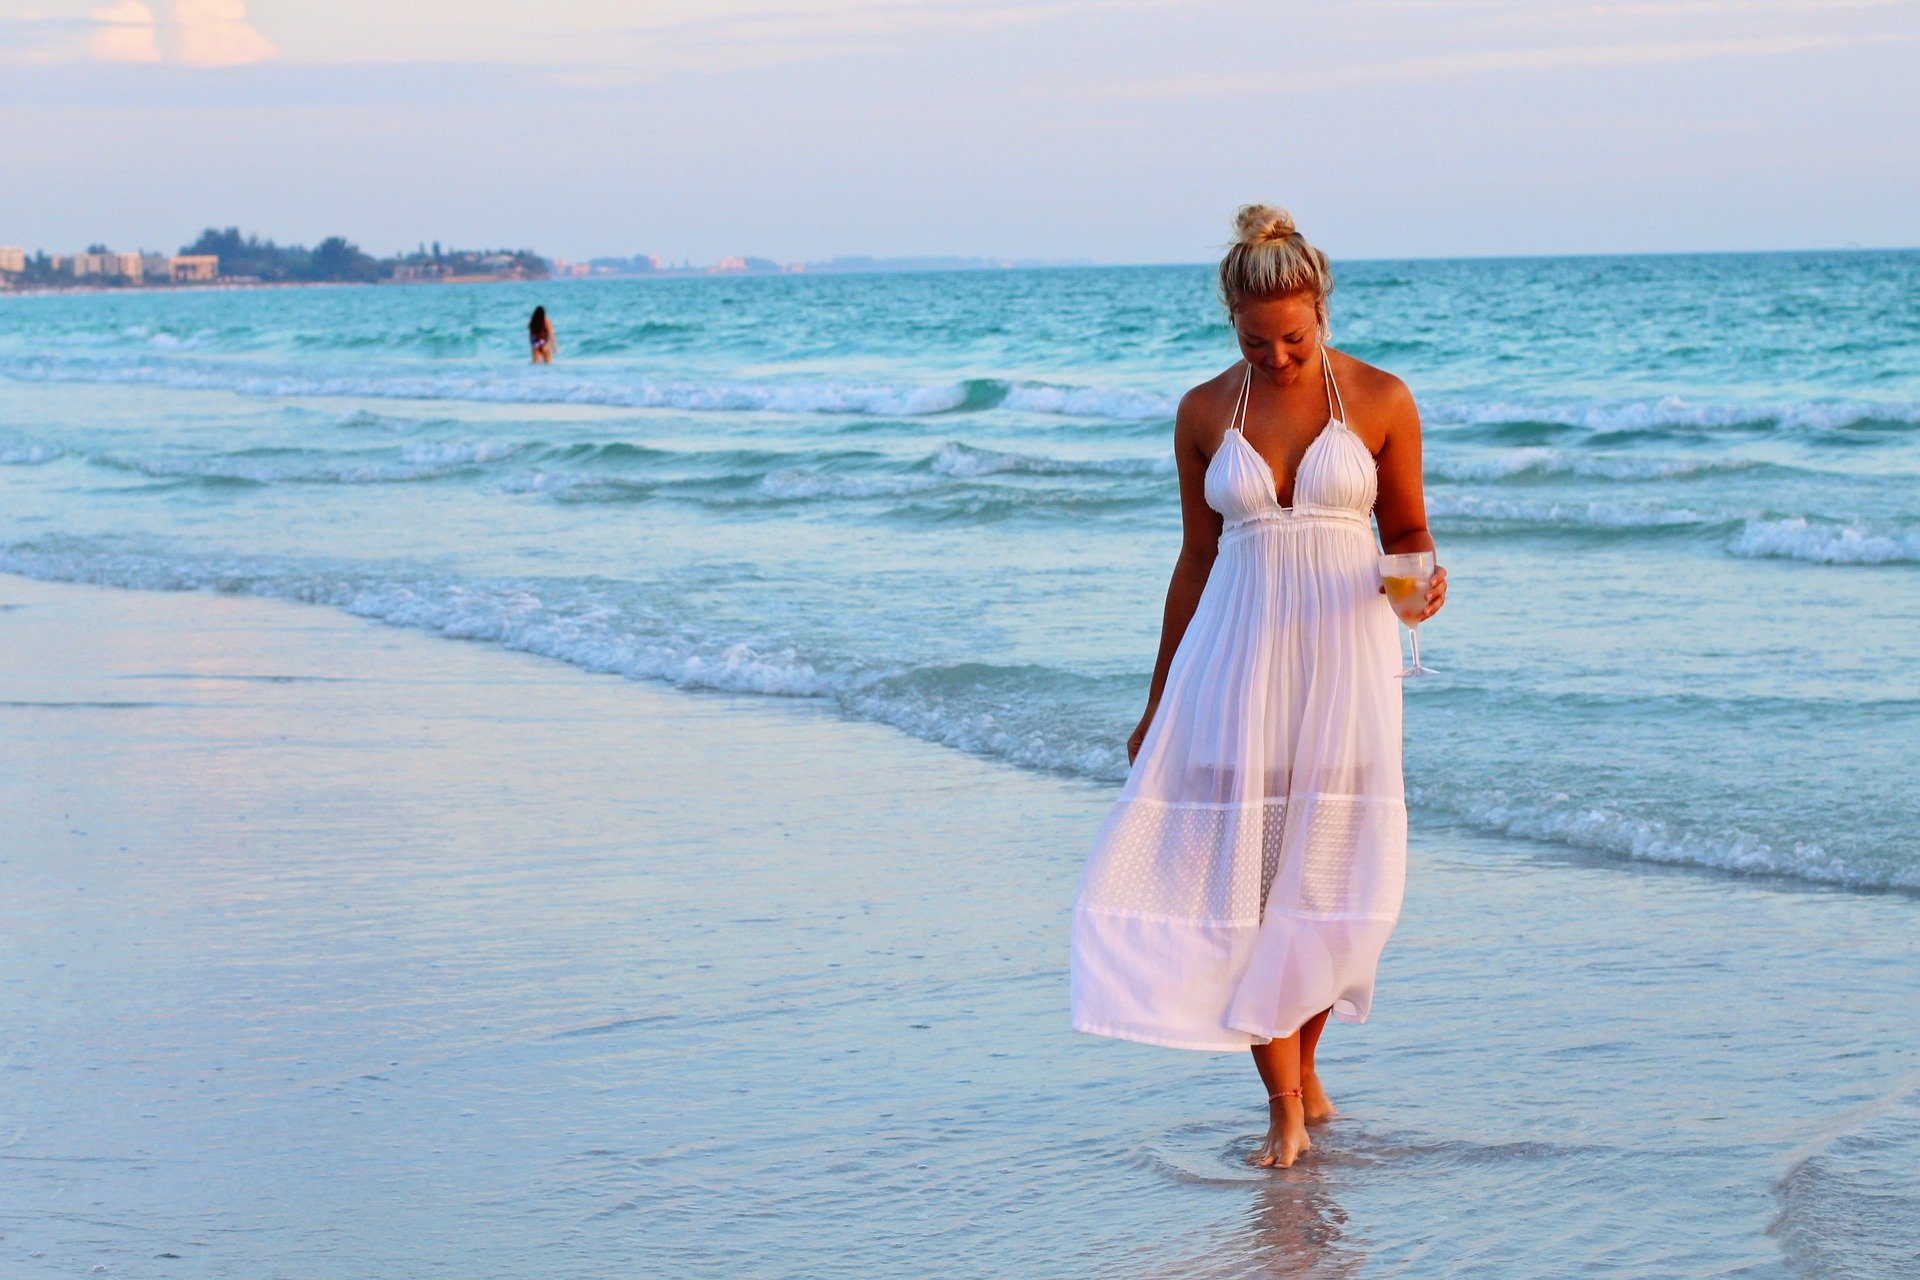 Жена после пляжа стоит в номере фото